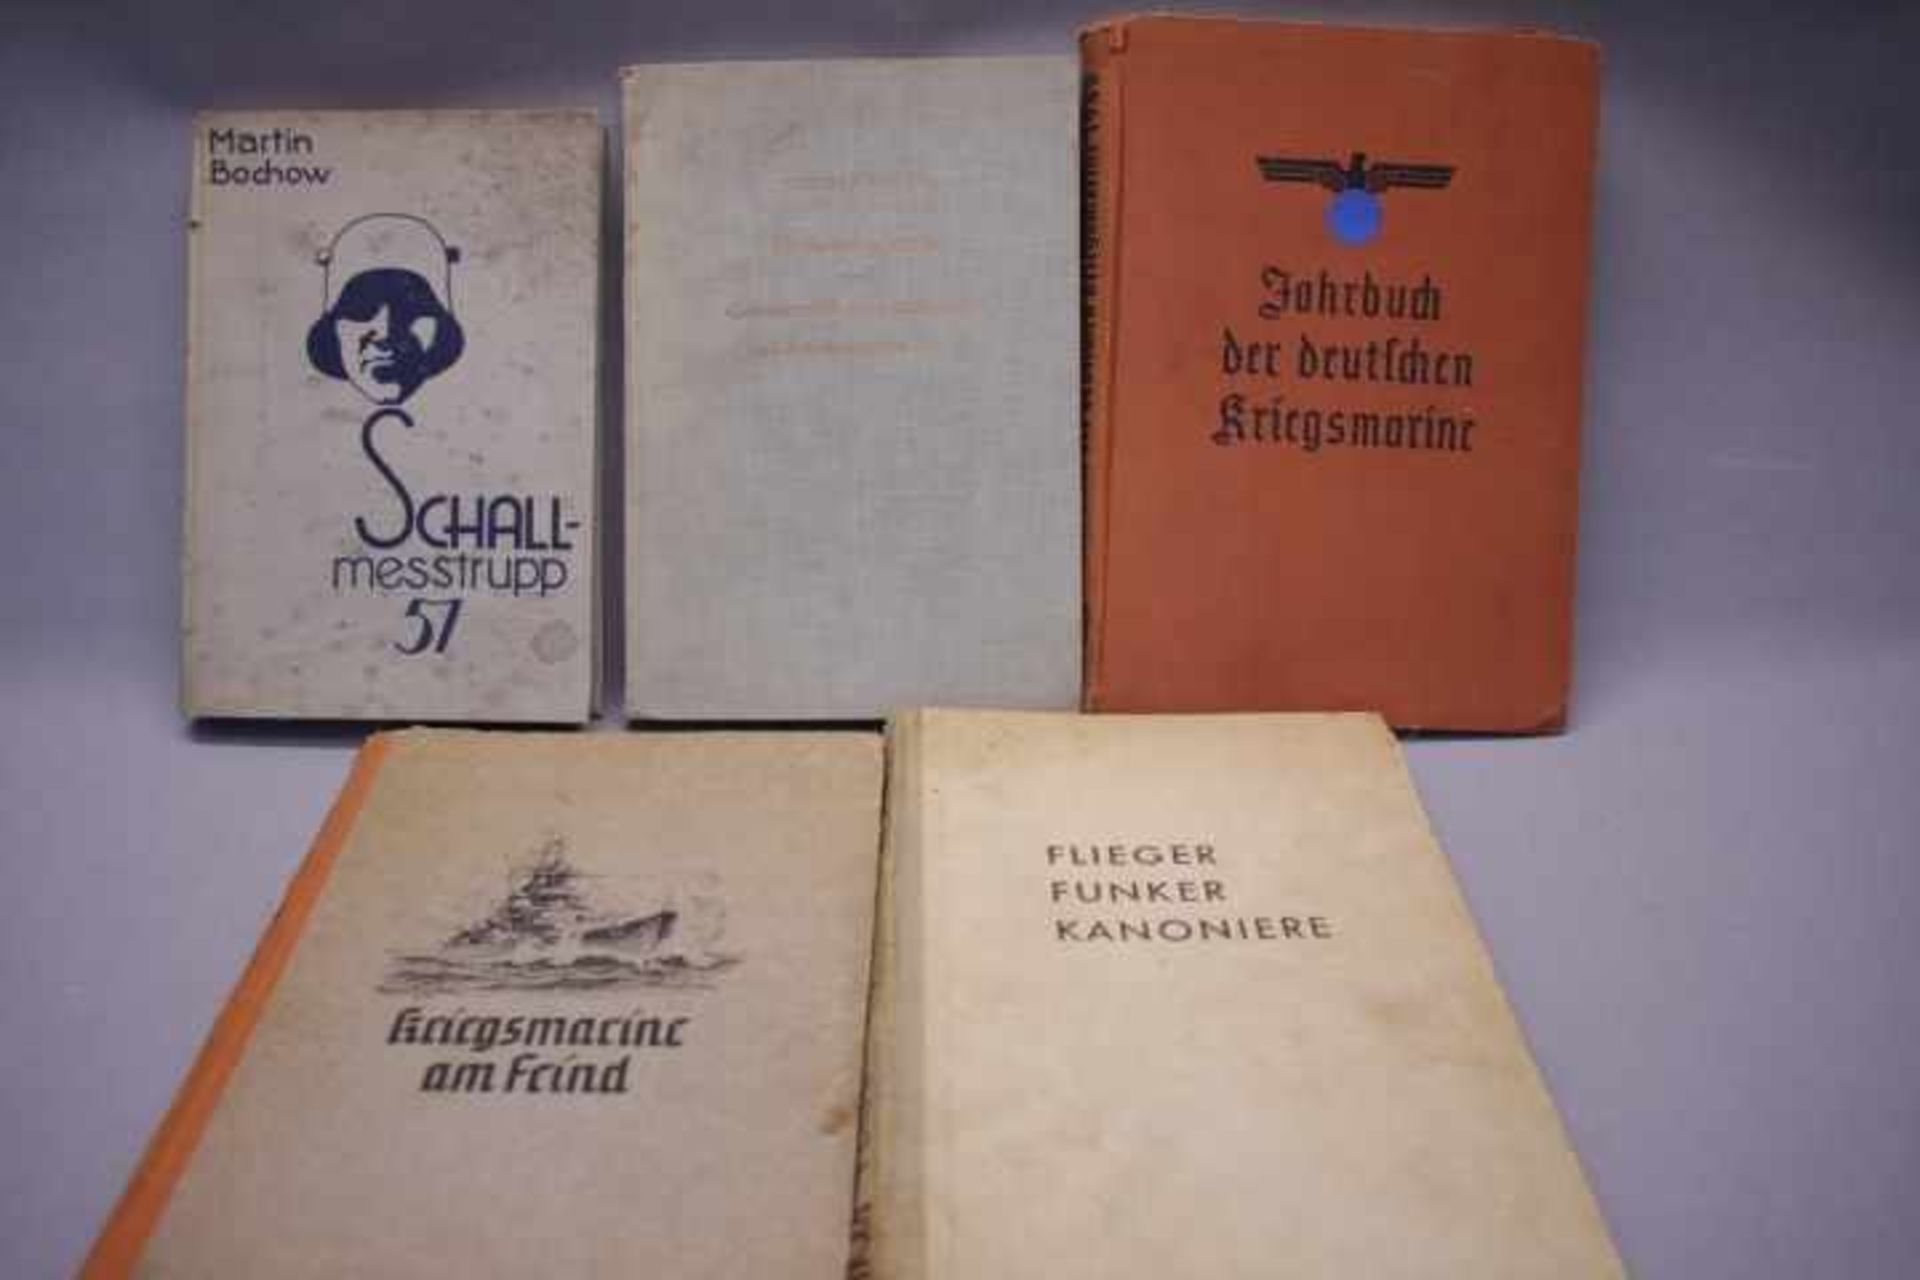 Konvolut 5 Bücher 3.Reich1.Schallmesstrupp 572.Waffen und Geheimwaffen3.Funker Flieger Kanoniere4.